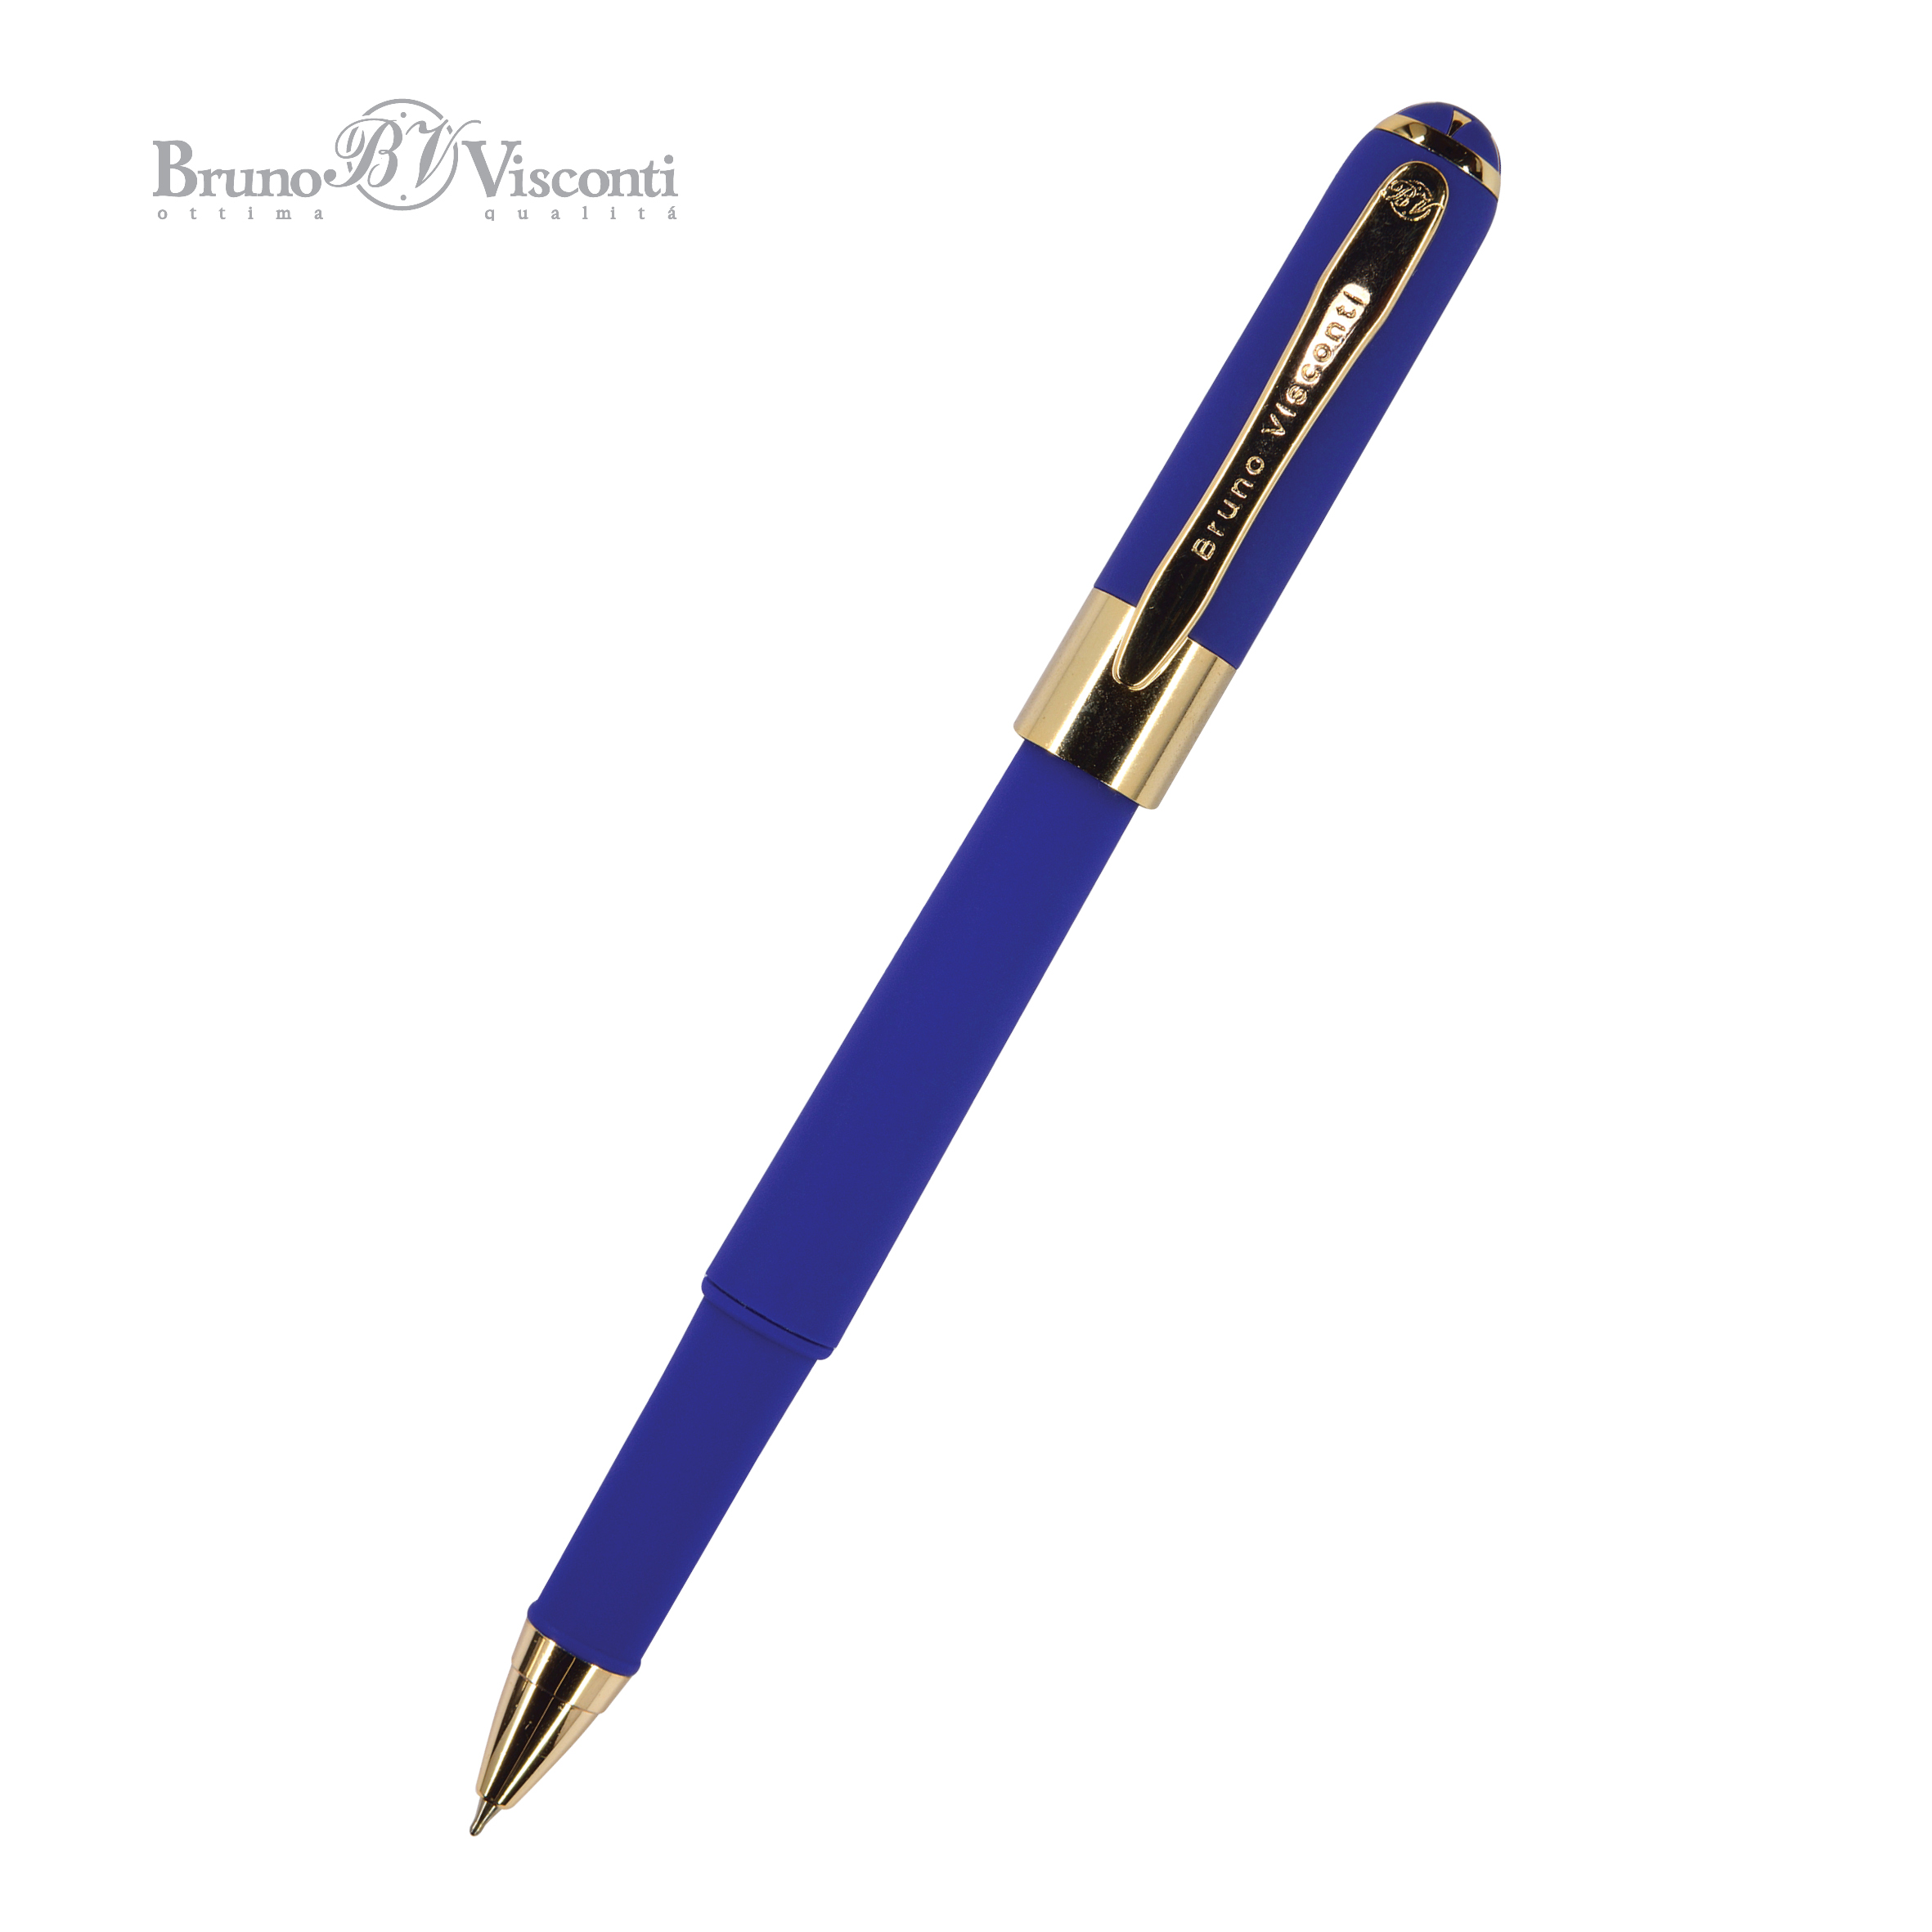 Ручка подар шар BV Monaco синяя 0,5мм сине-фиолетовый корпус